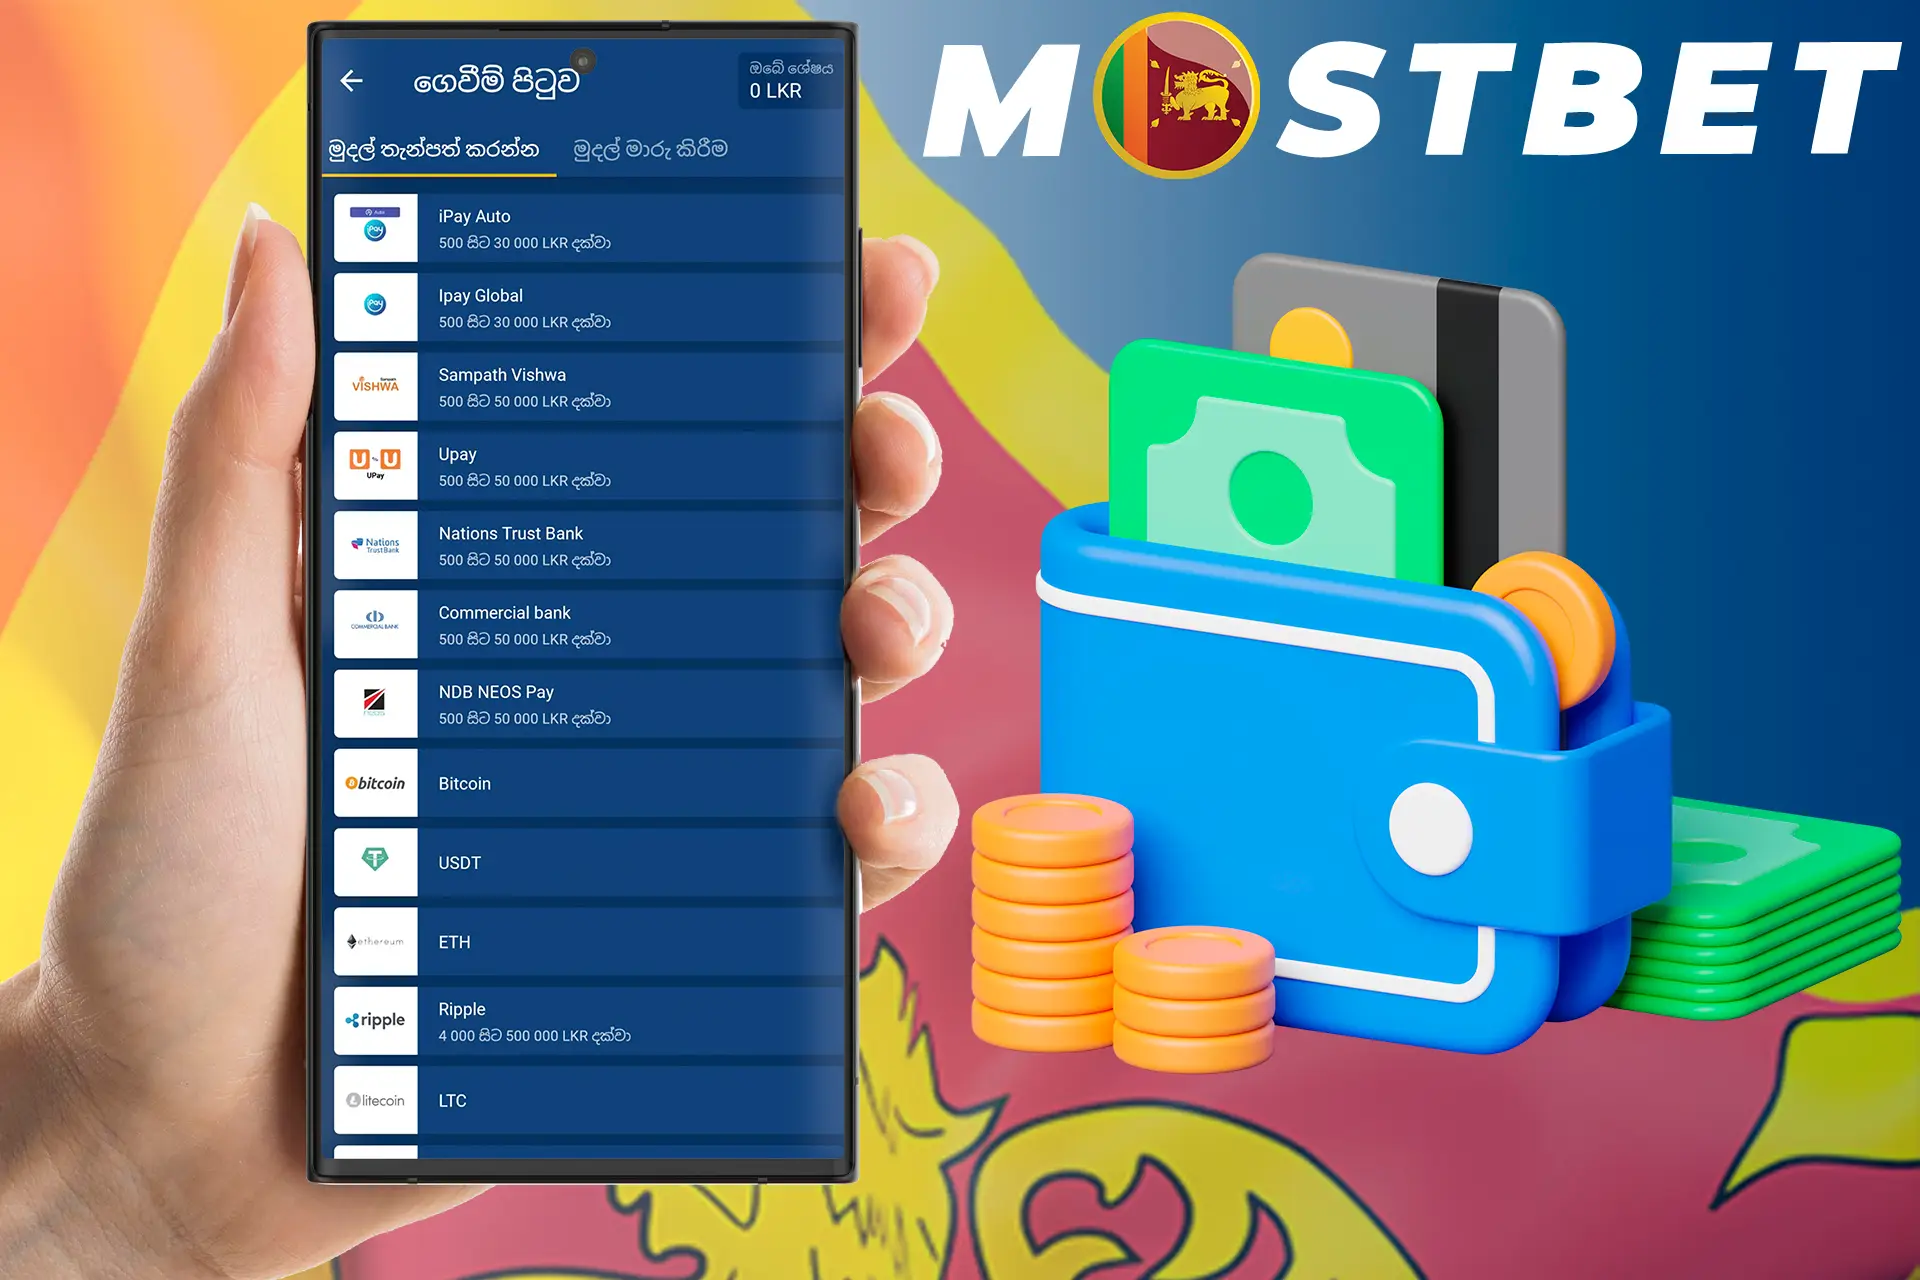 Make your first deposit at Mostbet Sri Lanka